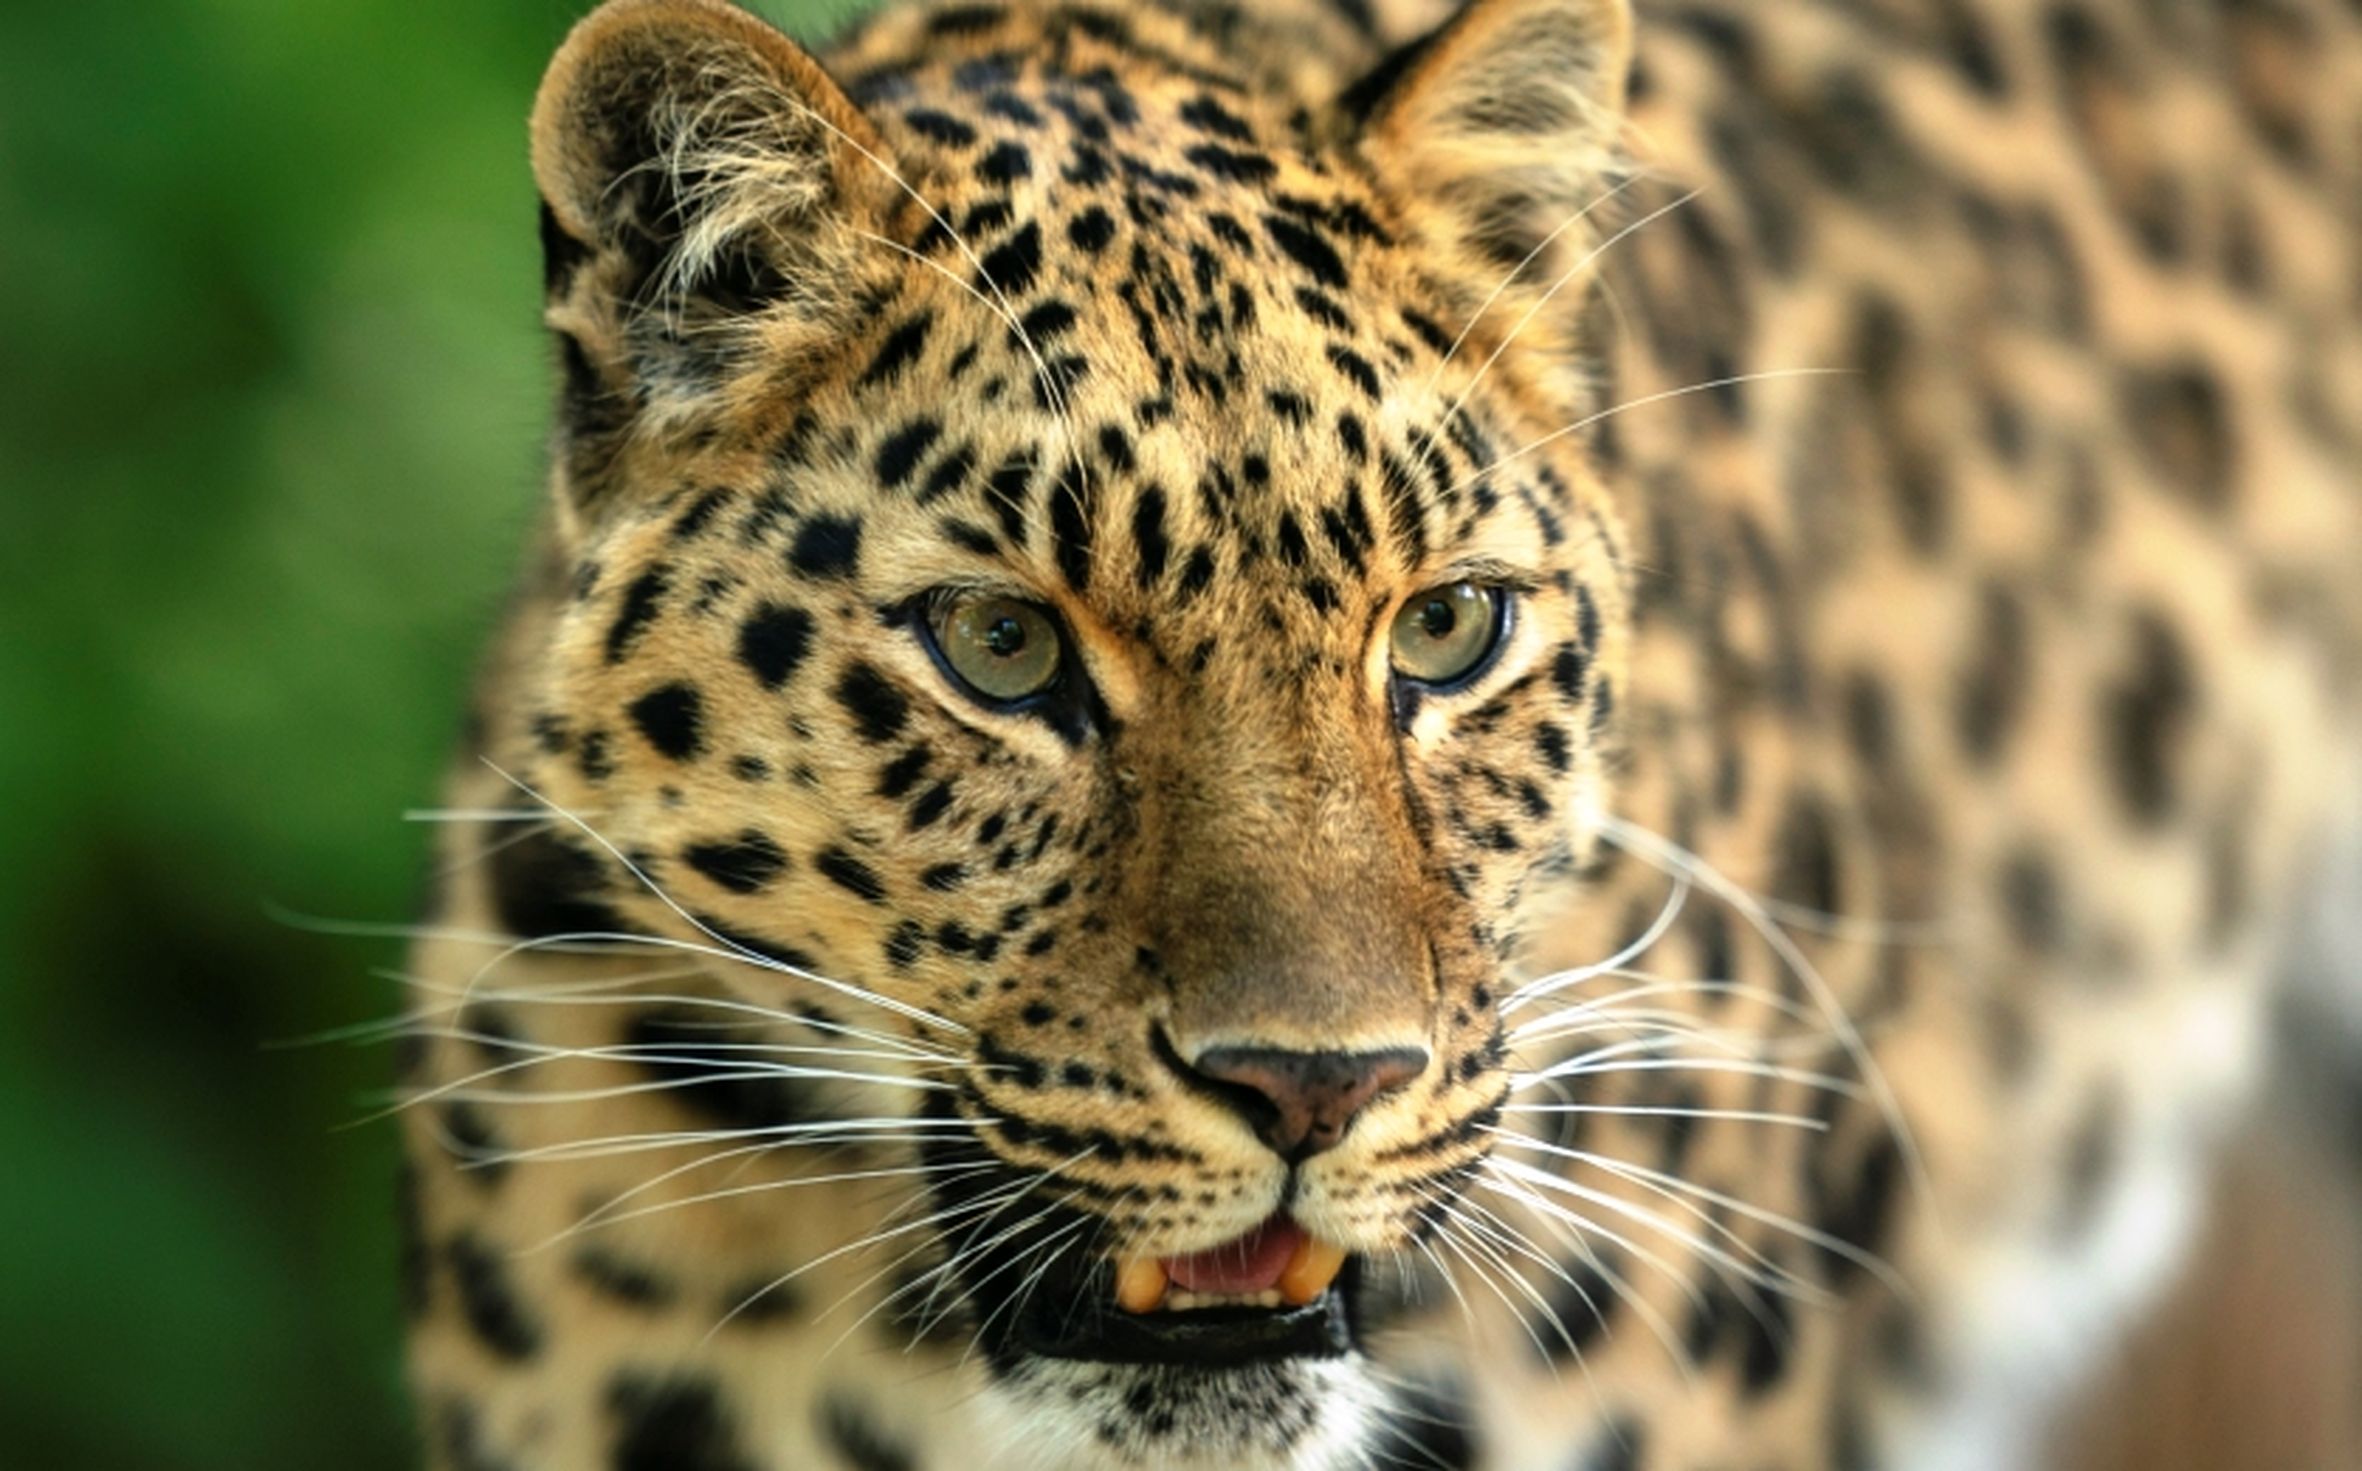 Leopard in niwali